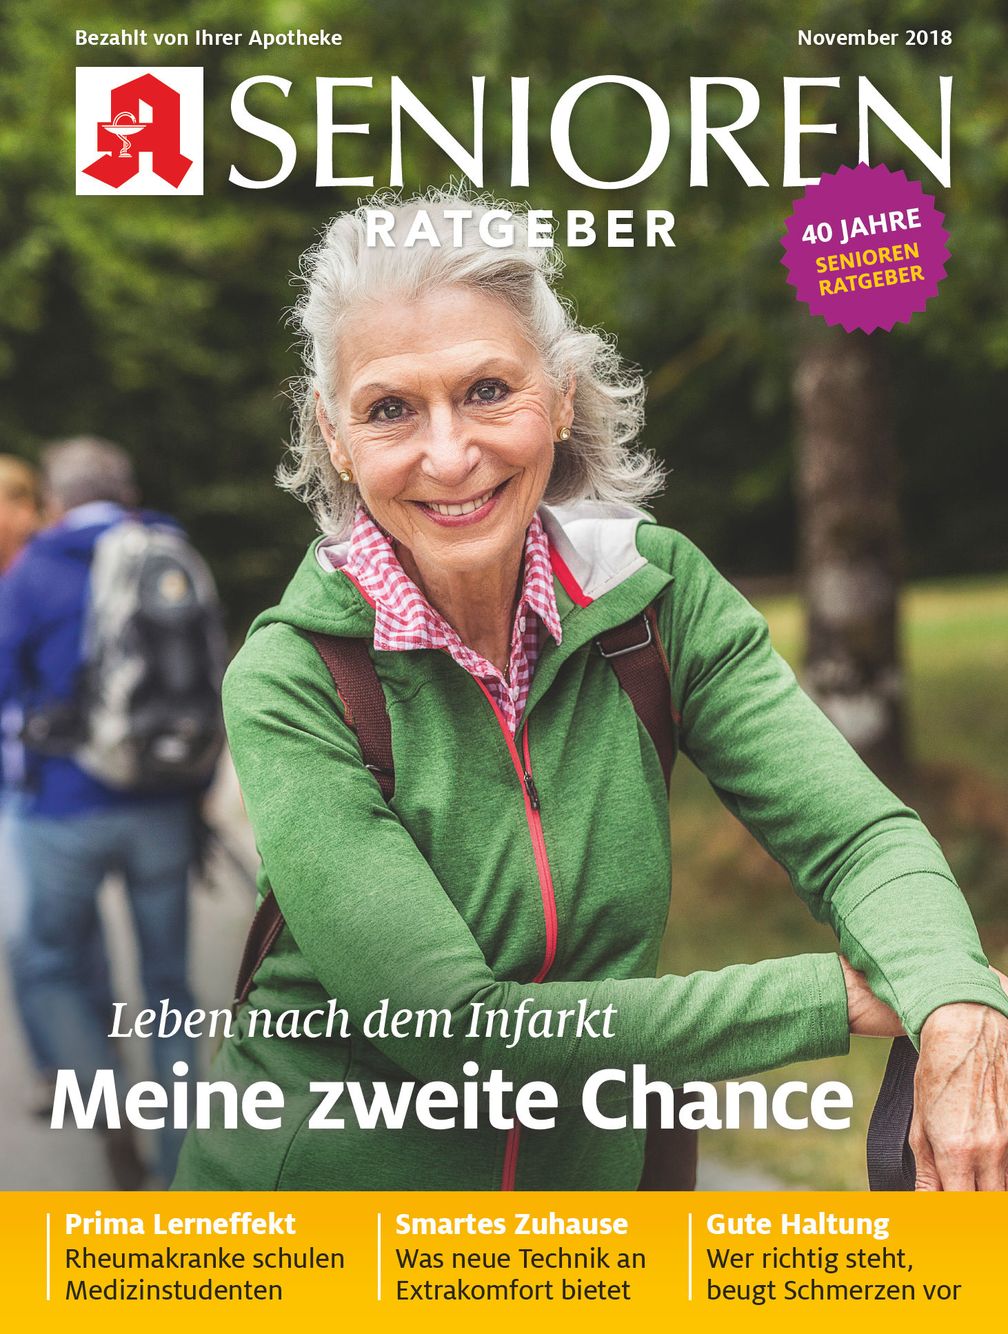 Titelbild Senioren Ratgeber November 2018 Bild: "obs/Wort & Bild Verlag - Senioren Ratgeber"